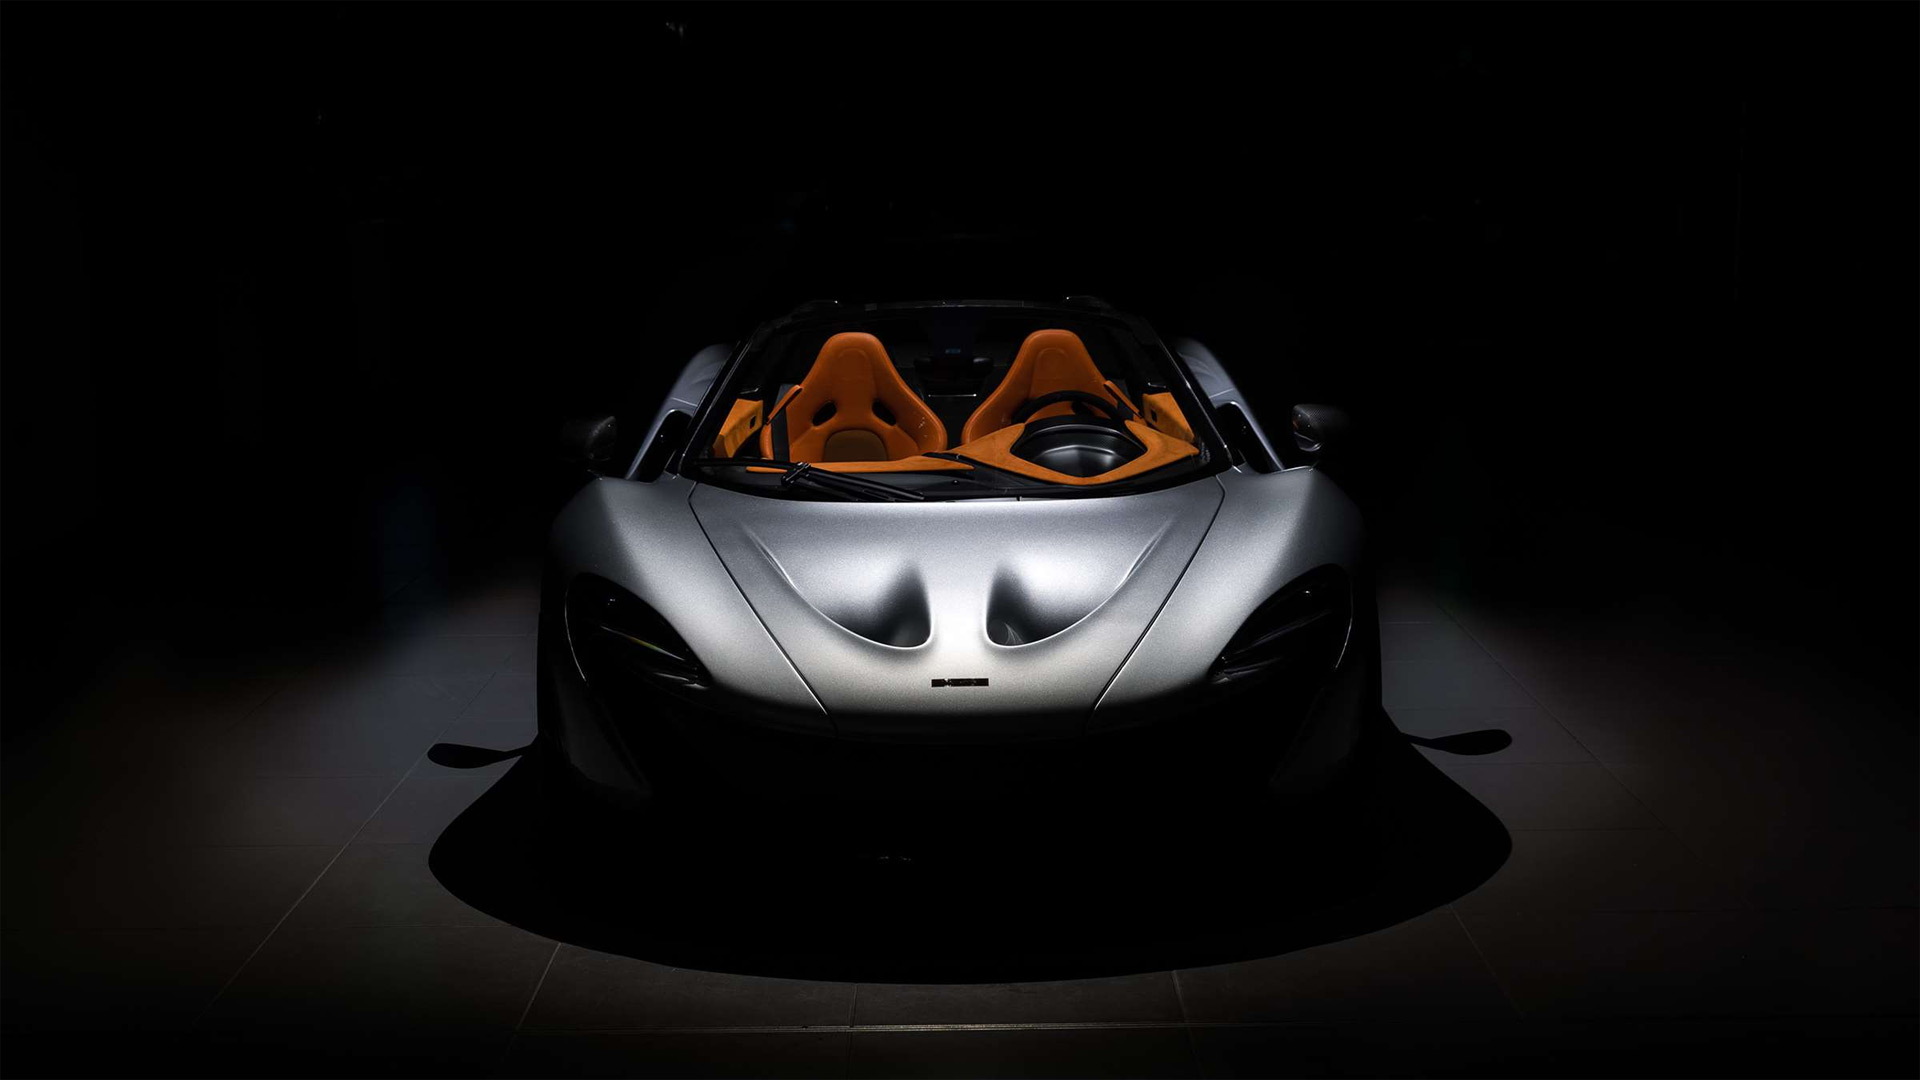 McLaren P1 Spider by Lanzante